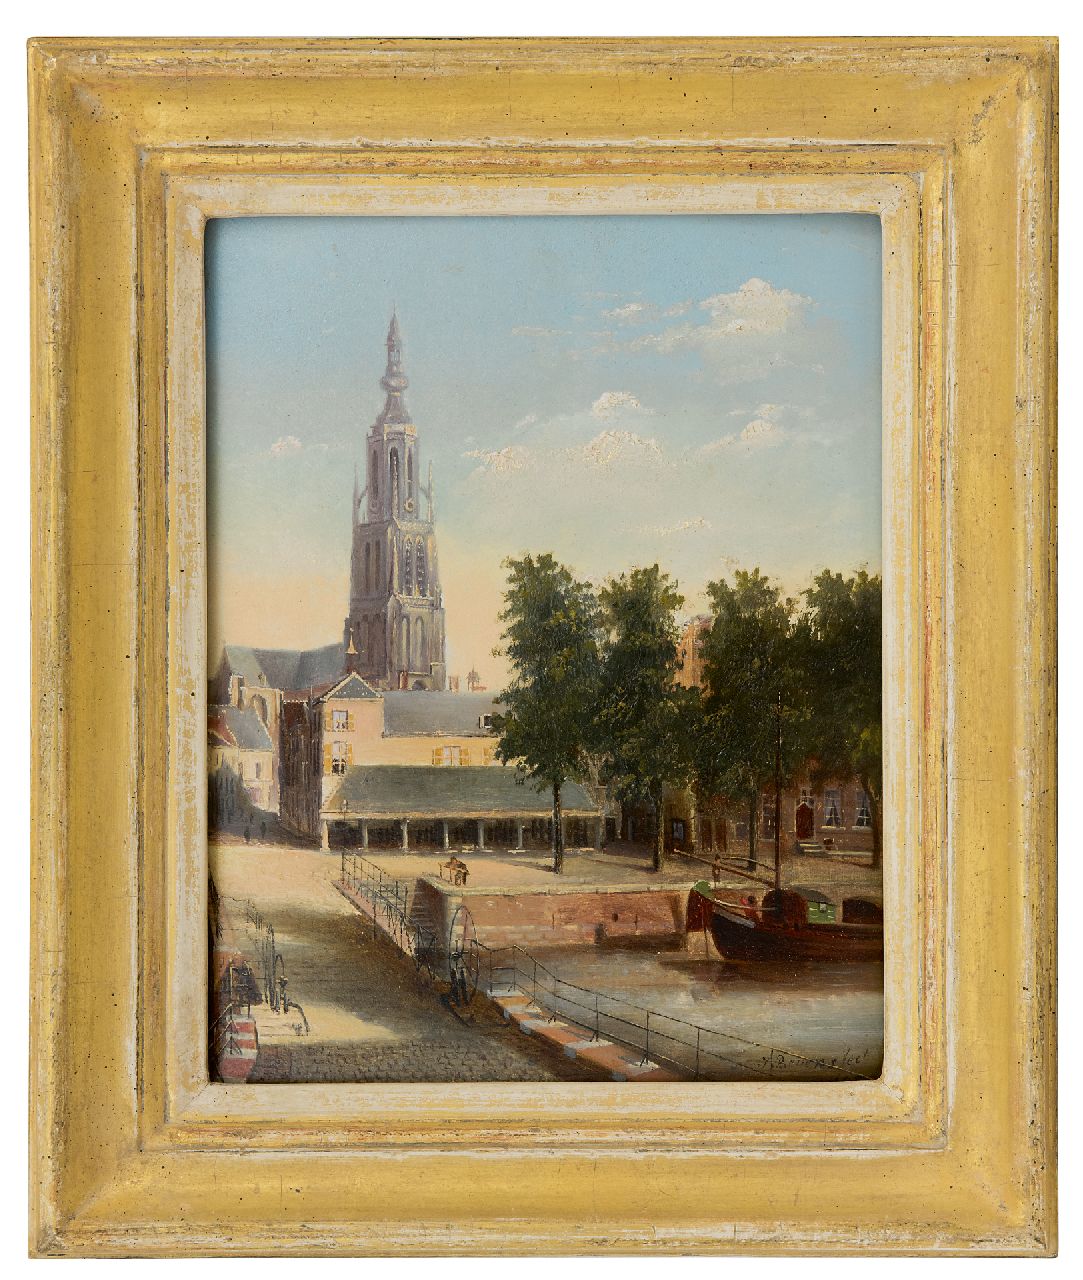 Beyens J.  | J. Beyens | Schilderijen te koop aangeboden | Gezicht op de Hoge Brug, de riviervismarkt en de Grote Kerk in Breda, olieverf op paneel 22,9 x 18,0 cm, gesigneerd rechtsonder en gedateerd 1882